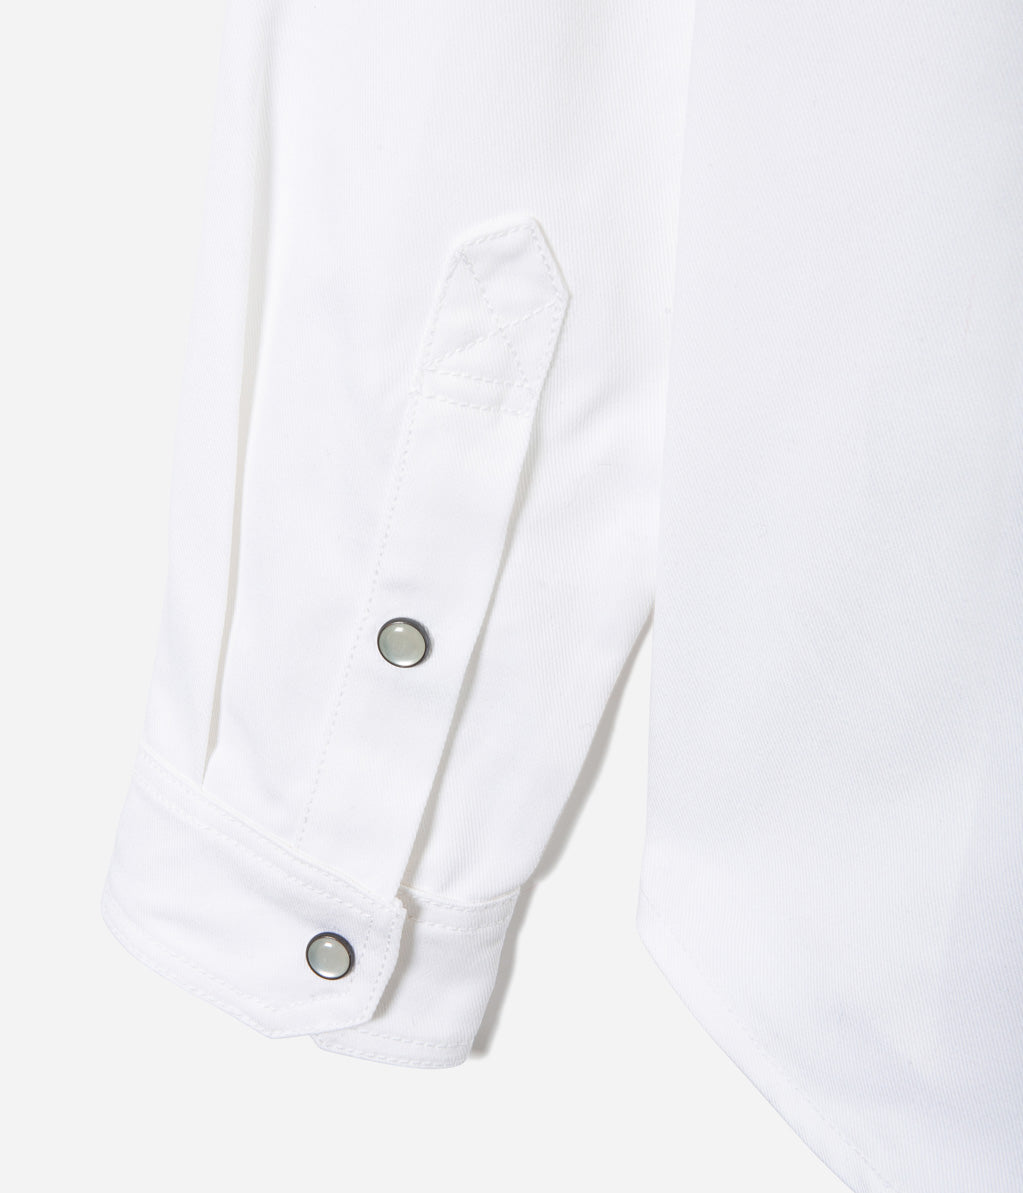 Tonton et Fils - La chemise «Jimmy» twill blanc - Fabriquée en France - Vue sur un poignet